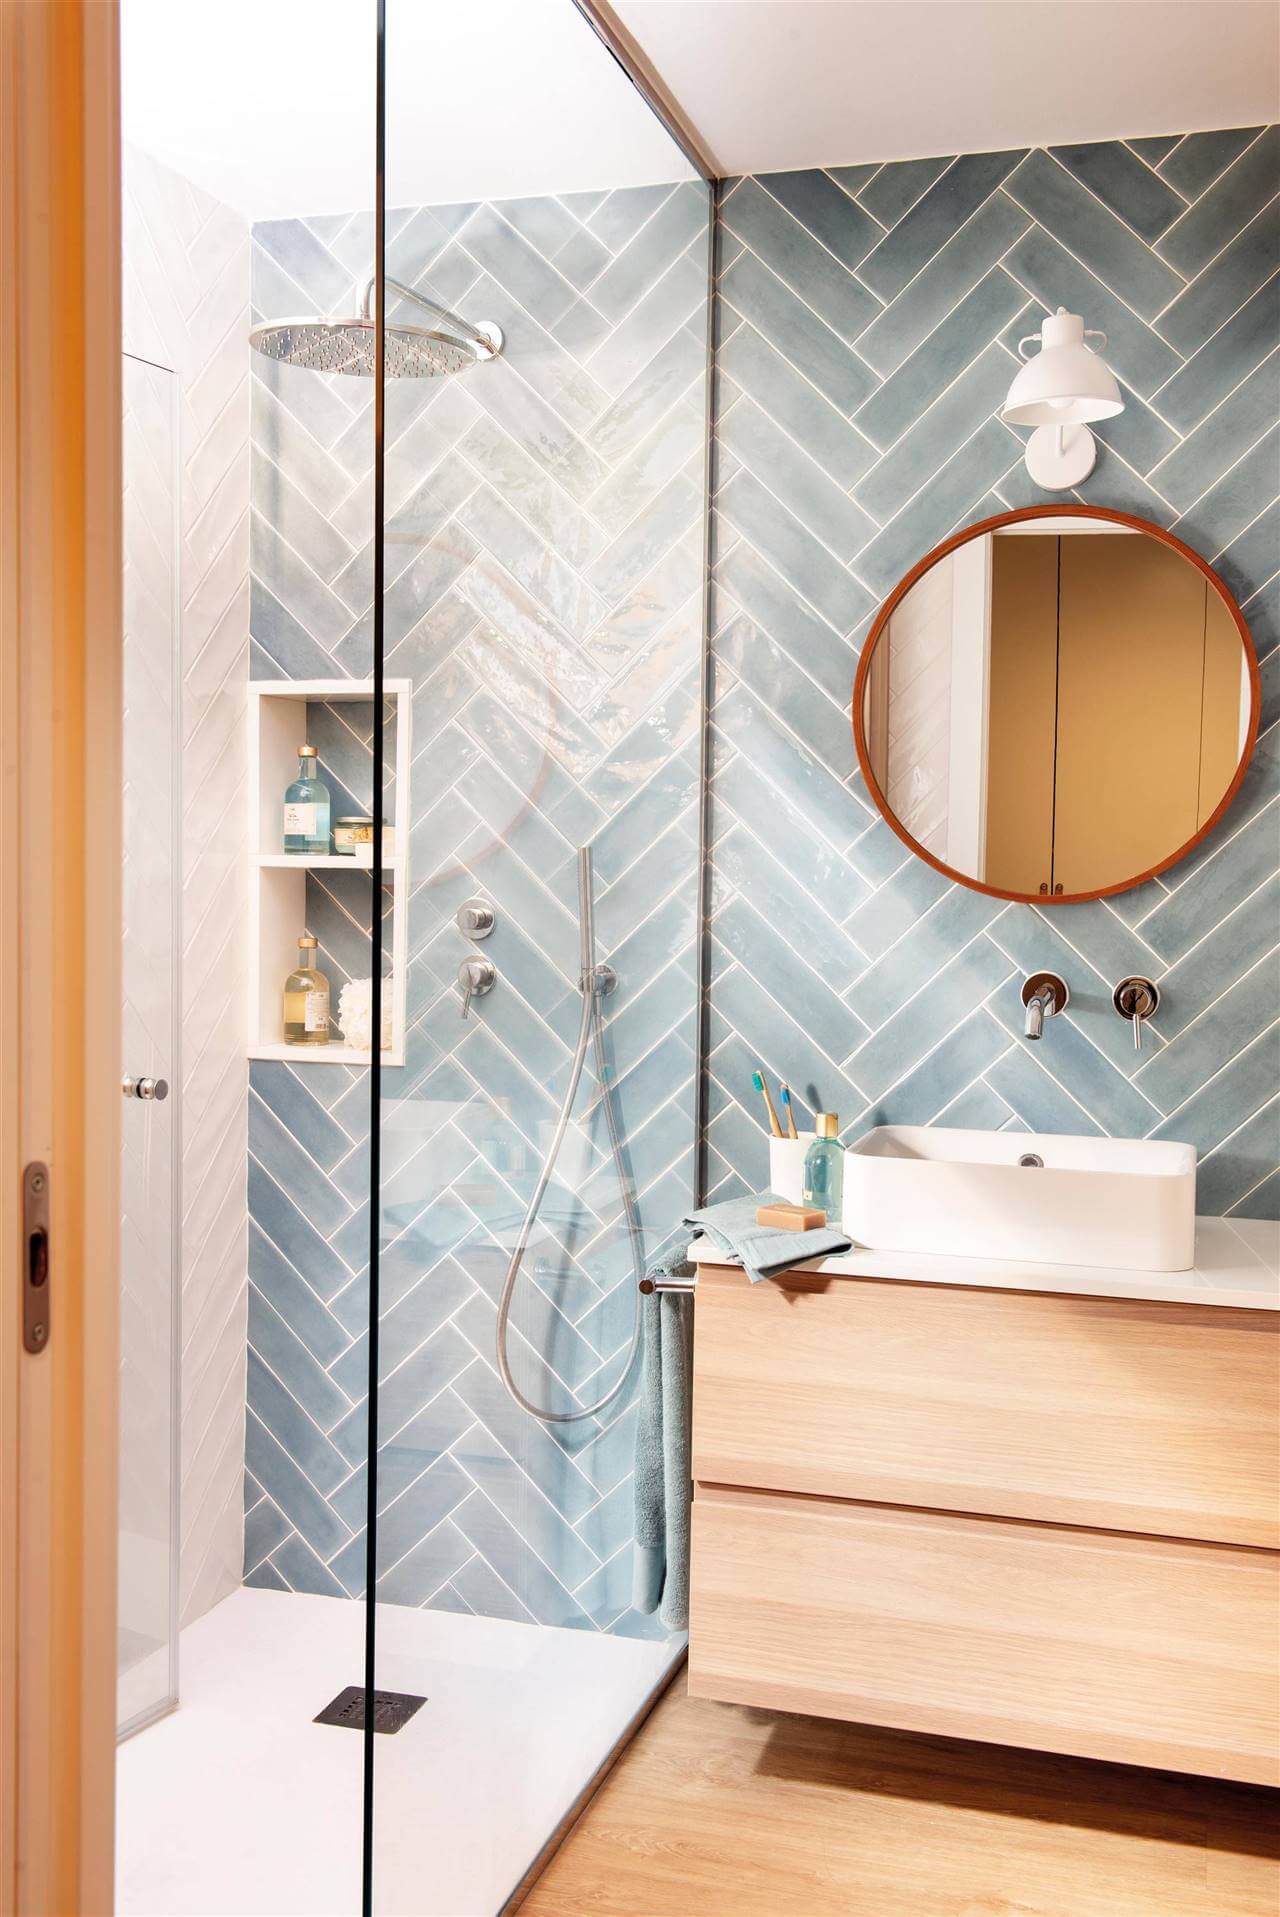 bano con azulejos de pared en gris formando espiga - ¿Qué baldosas funcionan mejor en baños pequeños?